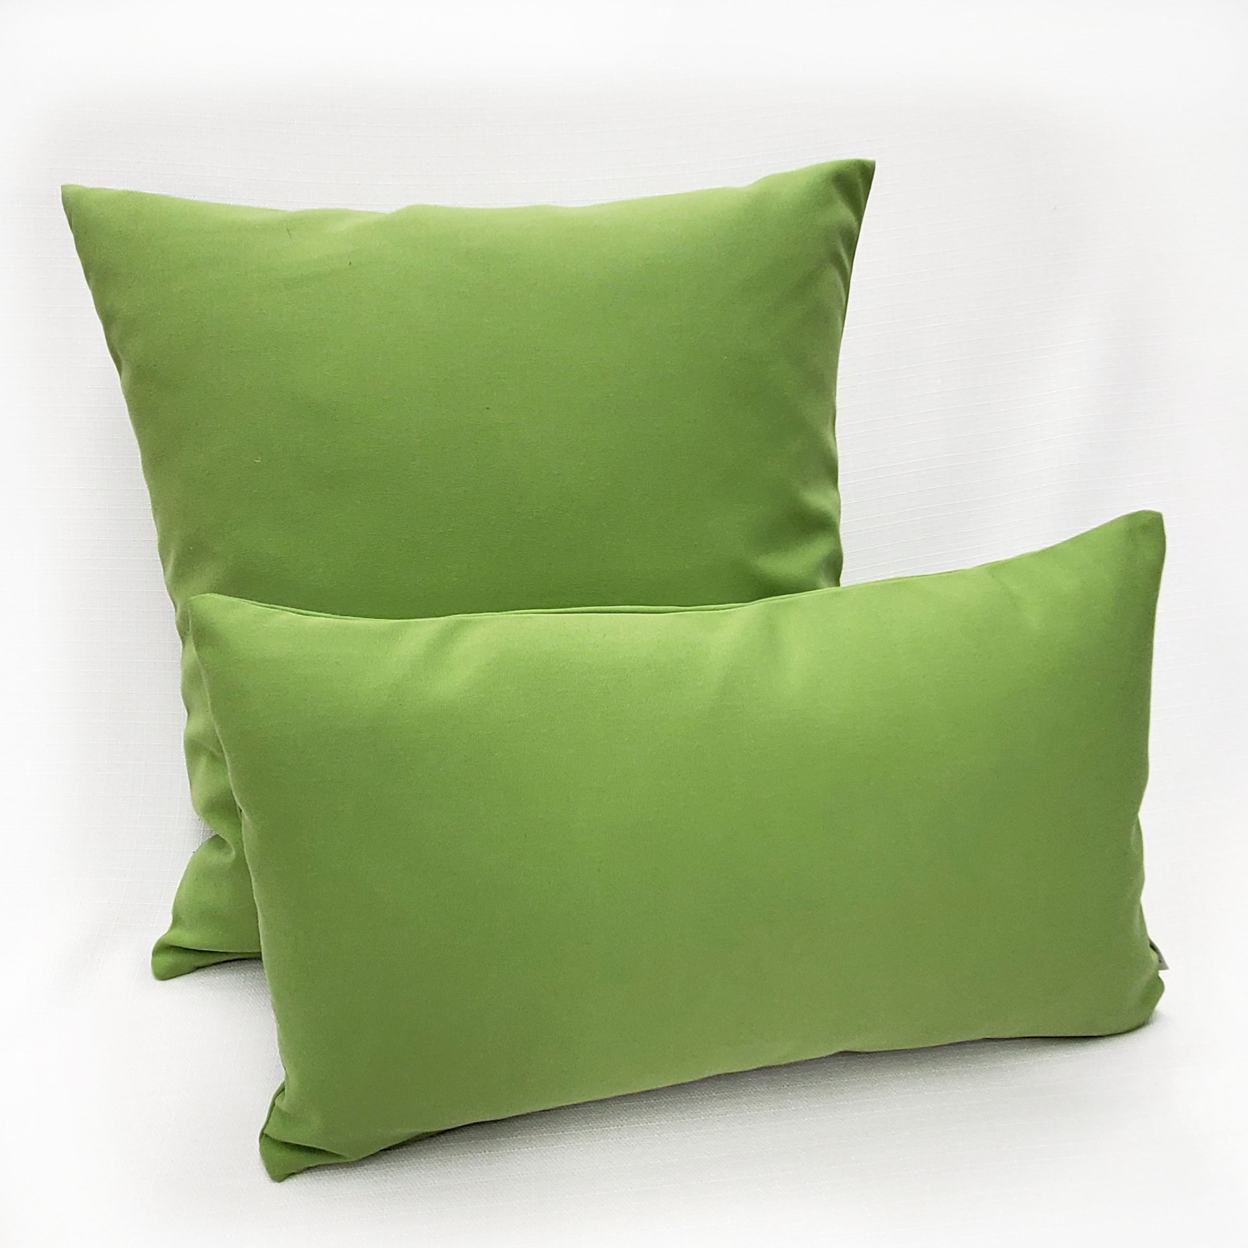 Sunbrella Ginko Green Outdoor Pillow 20x20, With Polyfill Insert